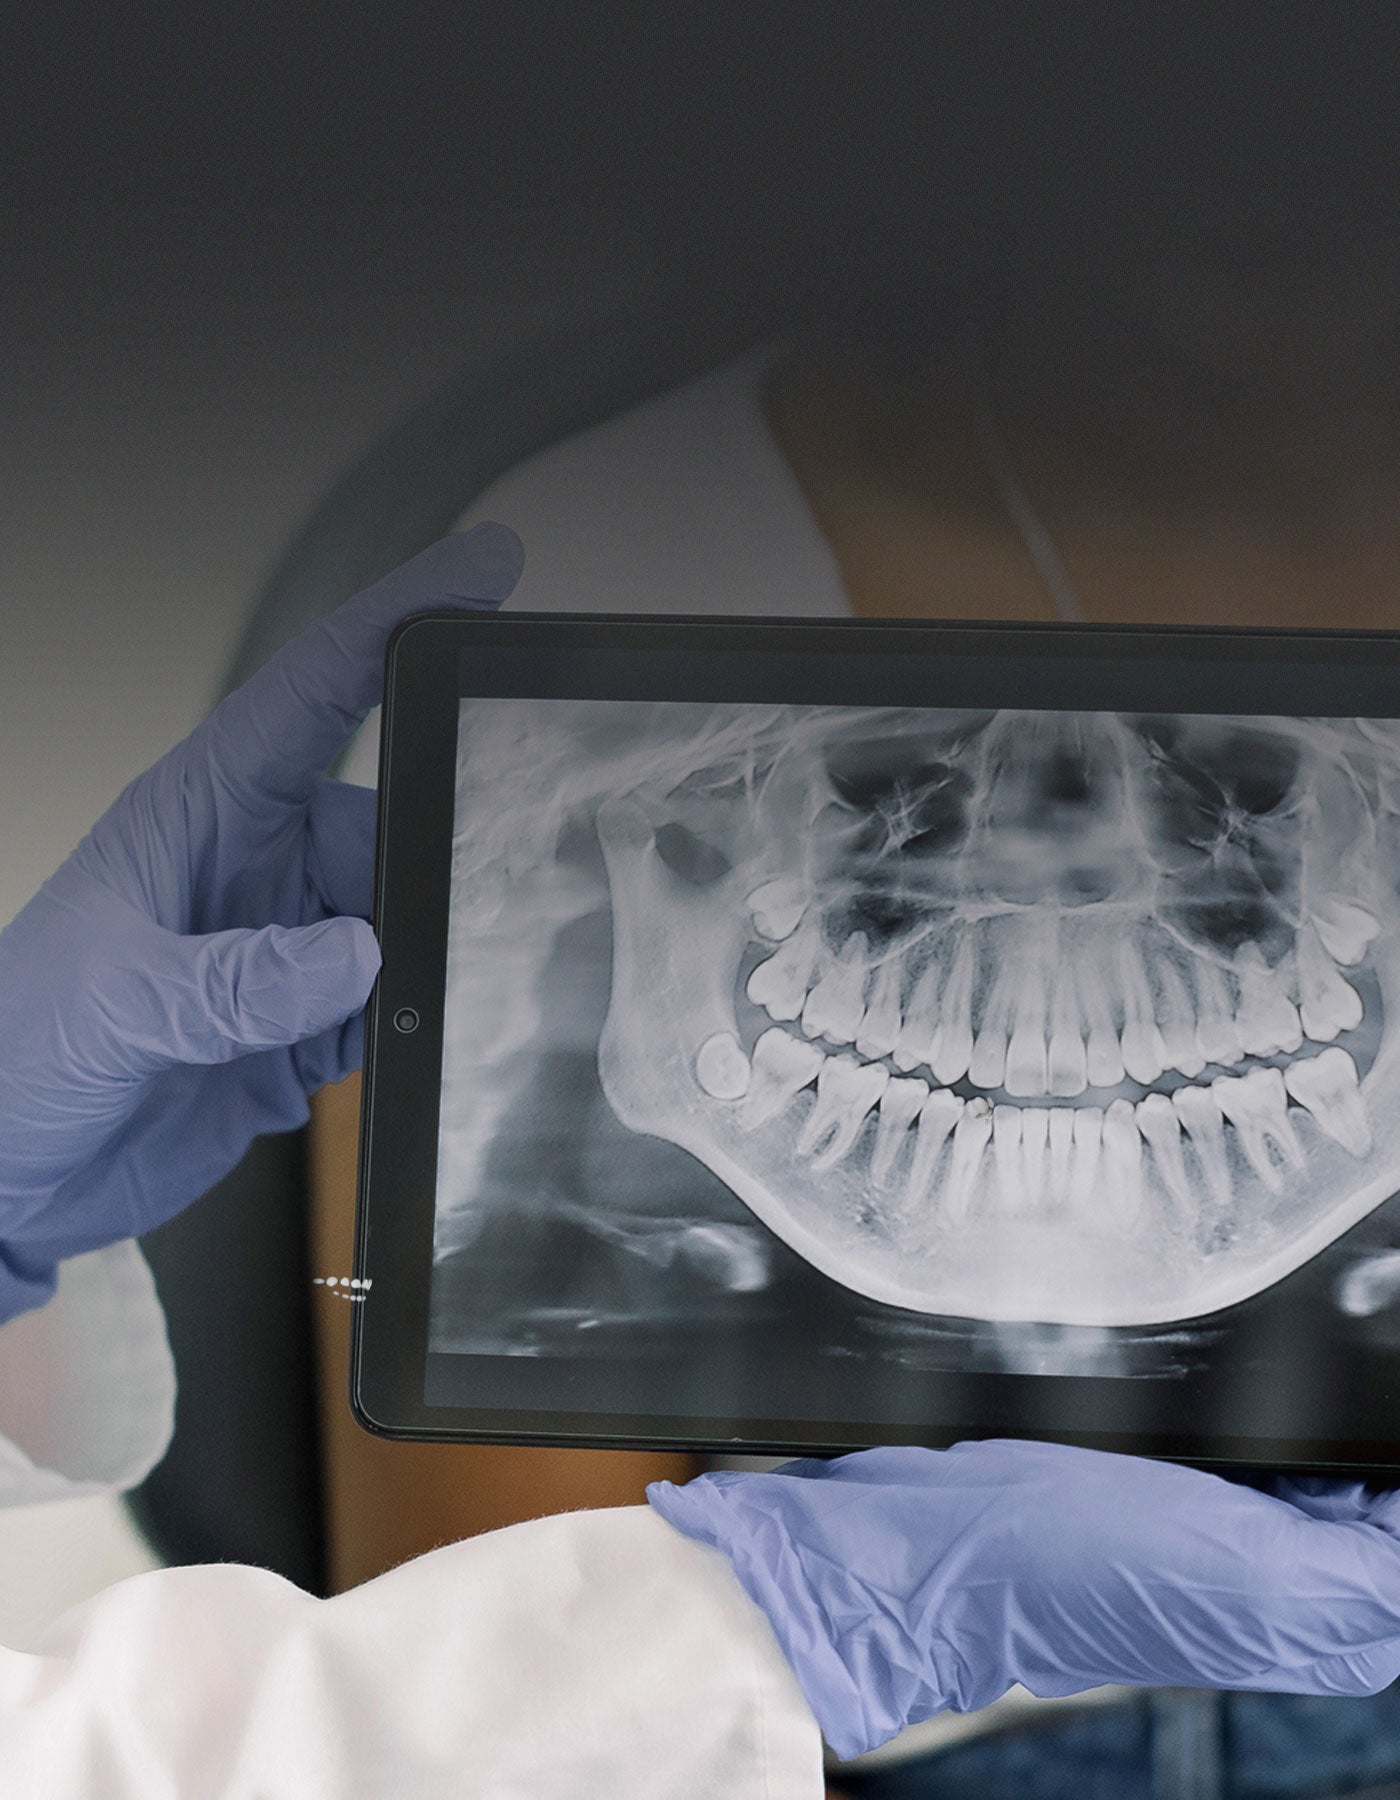 Patient having dental examination looking at dental x-ray